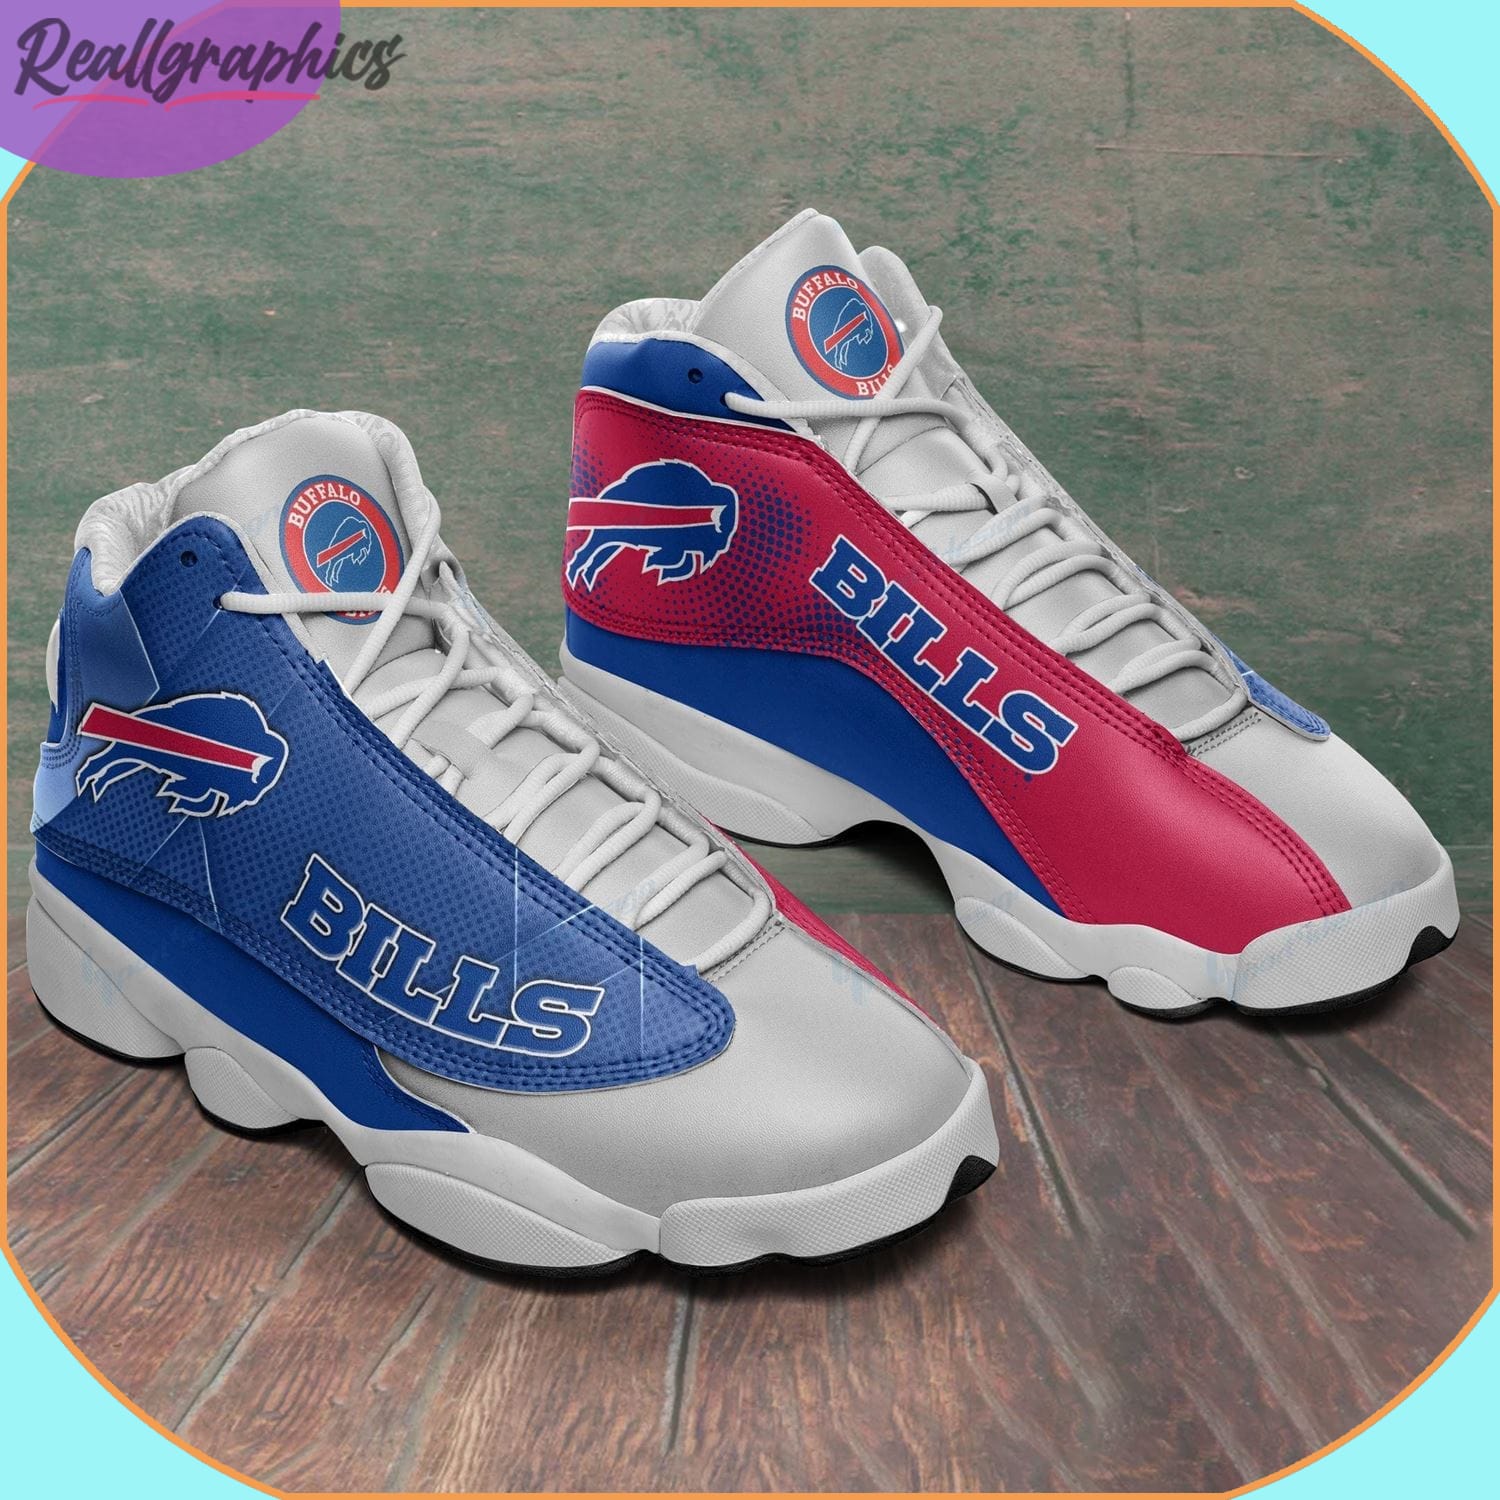 Buffalo Bills Football AJordan 13 Sneakers